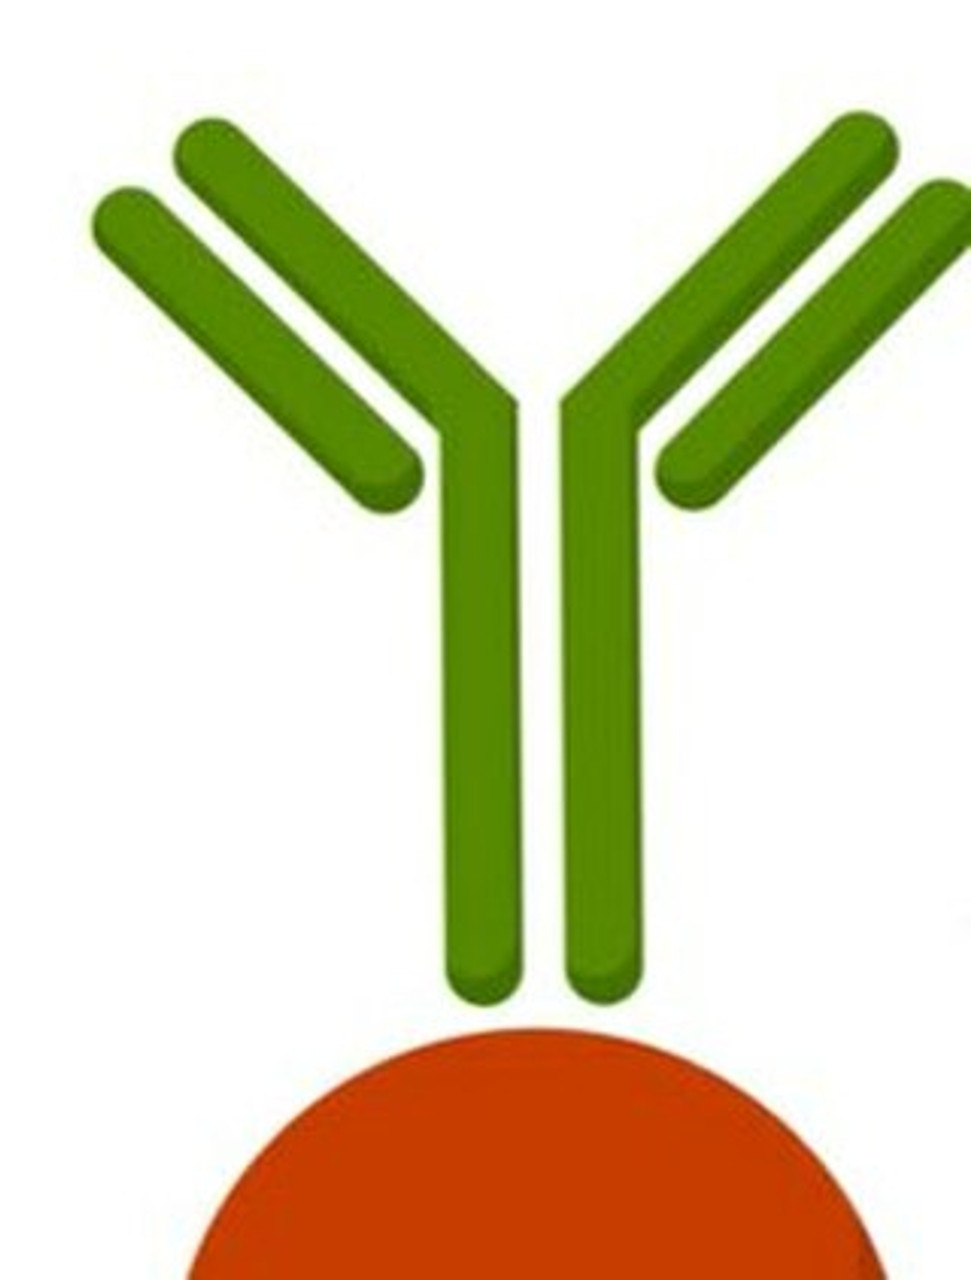 ABCG1 Antibody